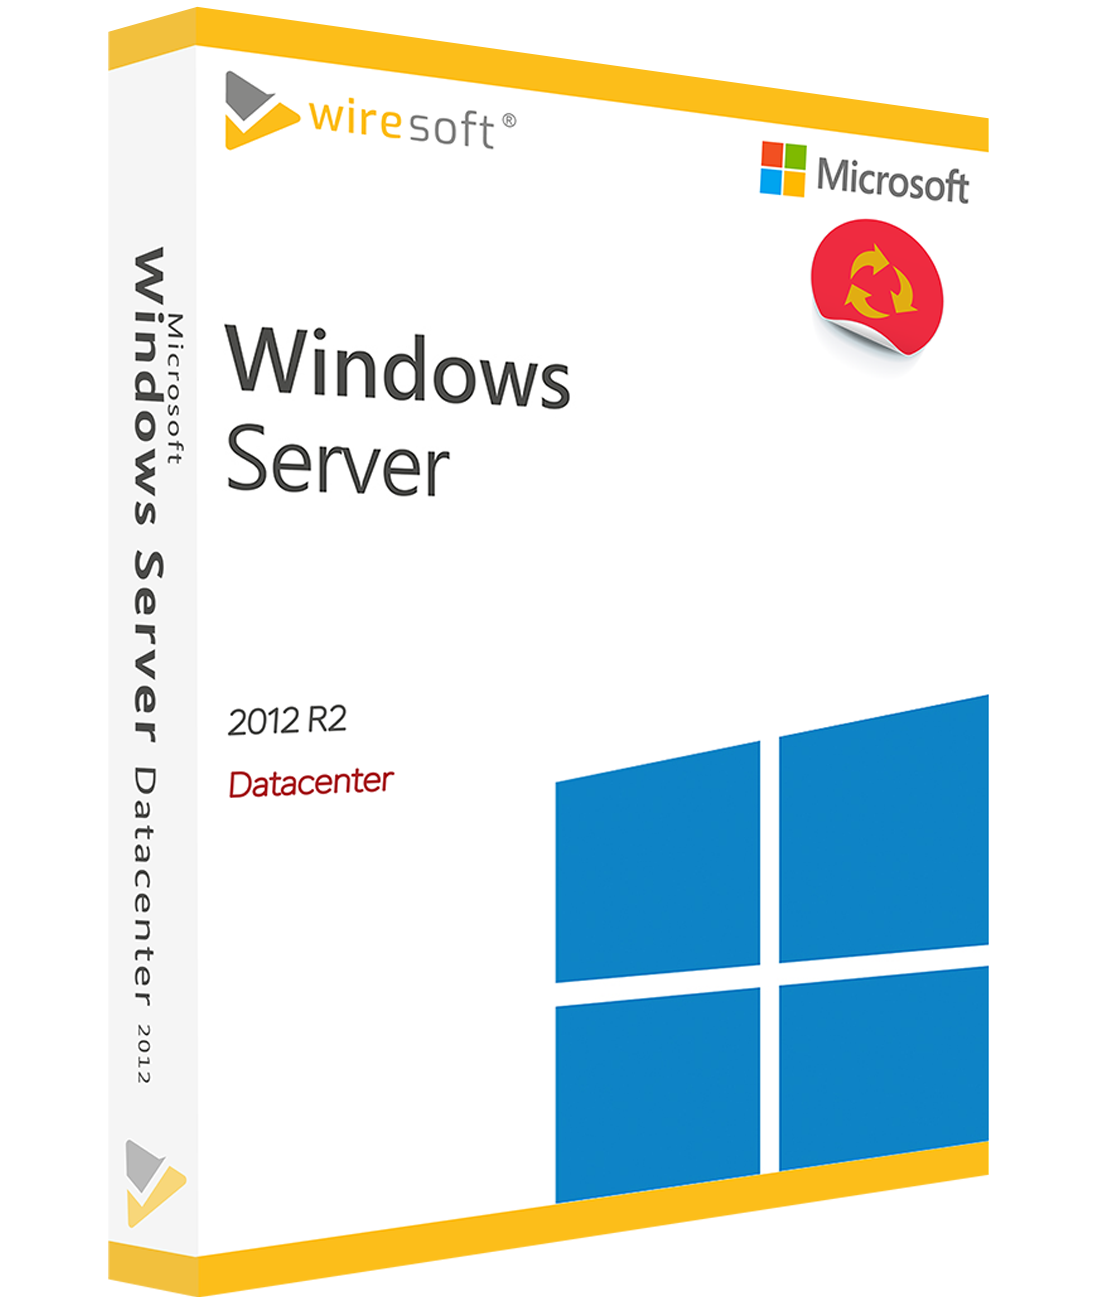 Windows Server 2012 Microsoft Windows Server Server Software Shop Wiresoft Compra De 7297